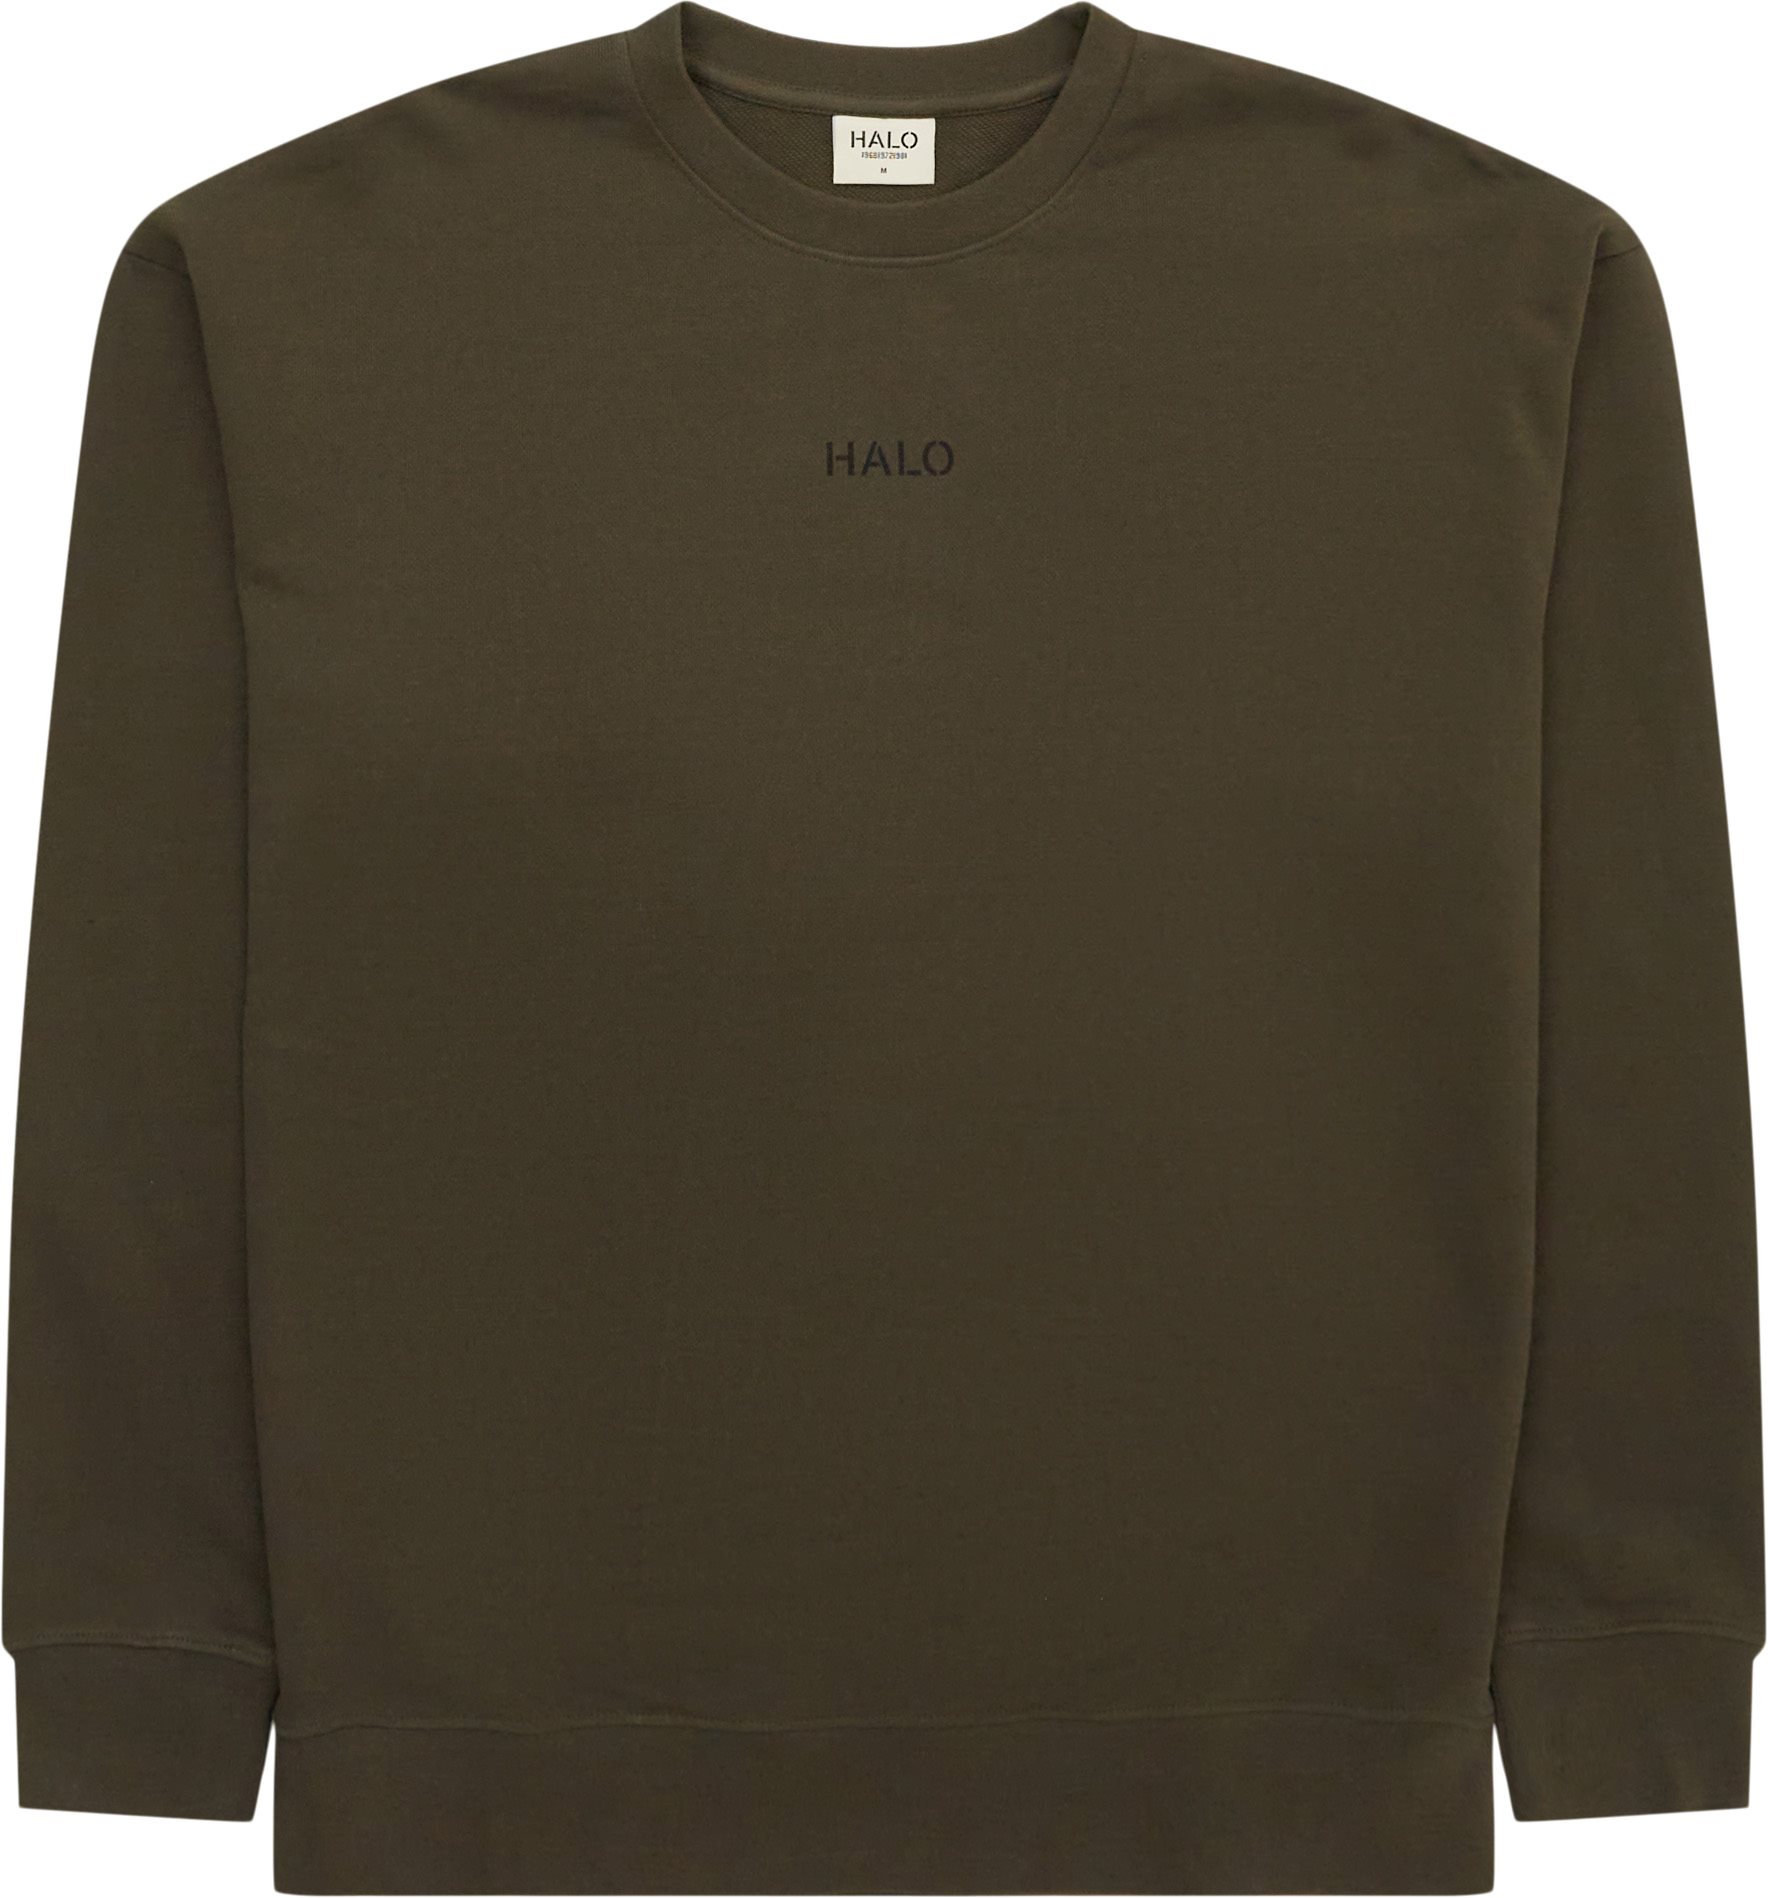 HALO Sweatshirts OFF DUTY CREW 610406 Green